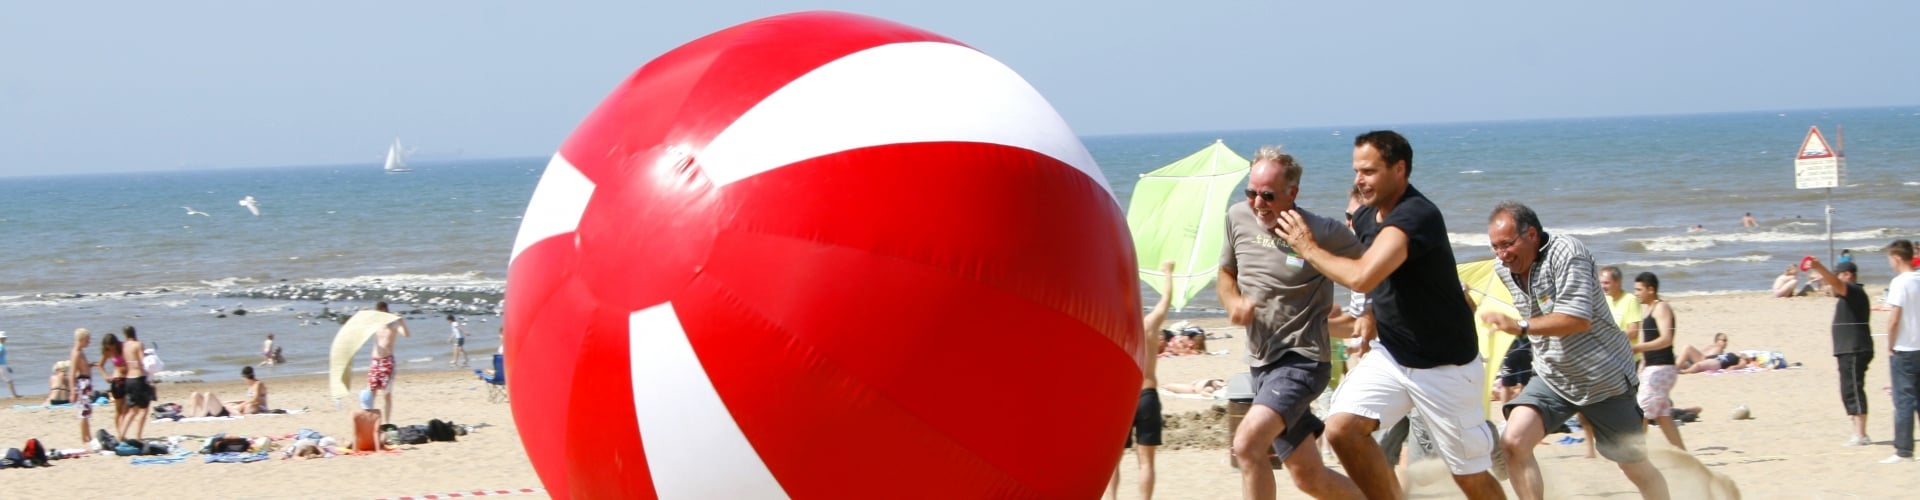 Megaballen race op het strand als onderdeel van onze strand zeskamp